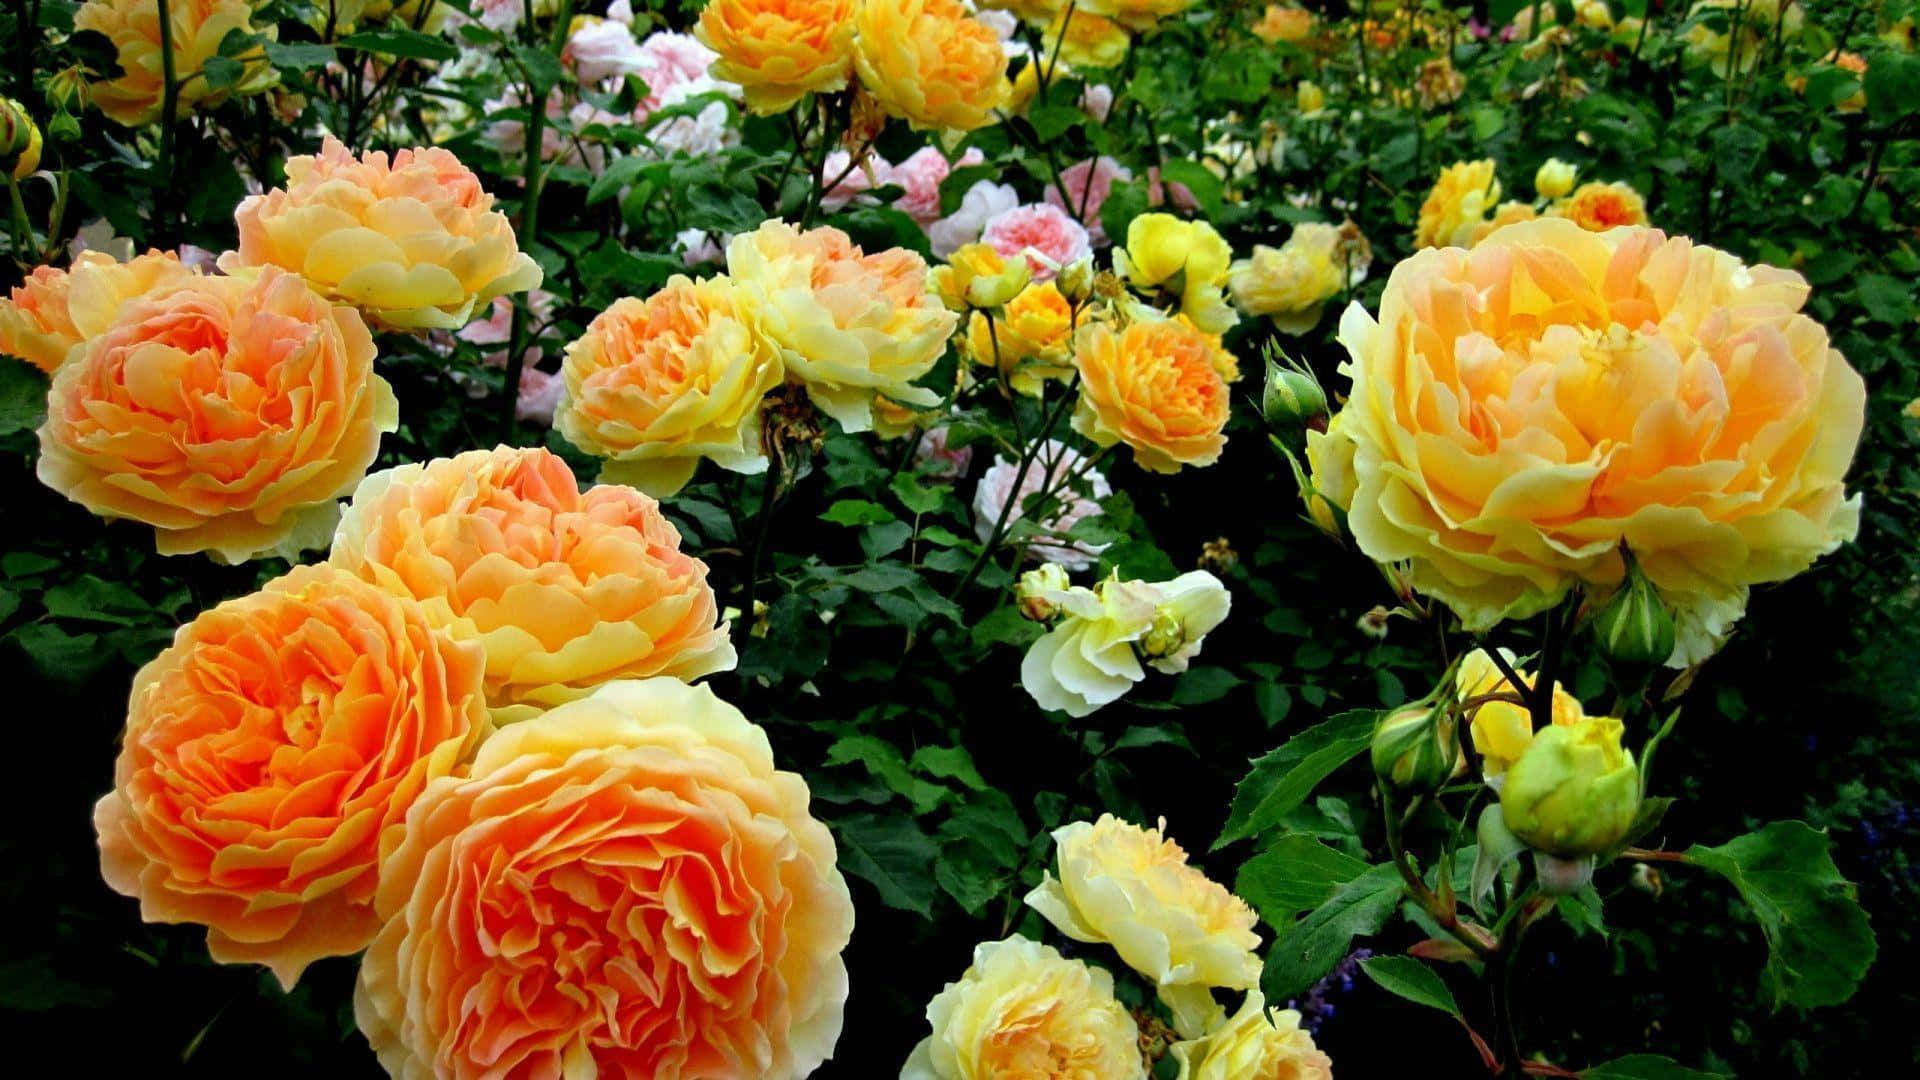 Papelde Parede De Computador Ou Celular: Imagem De Arbusto De Rosas Amarelas De Jardim.